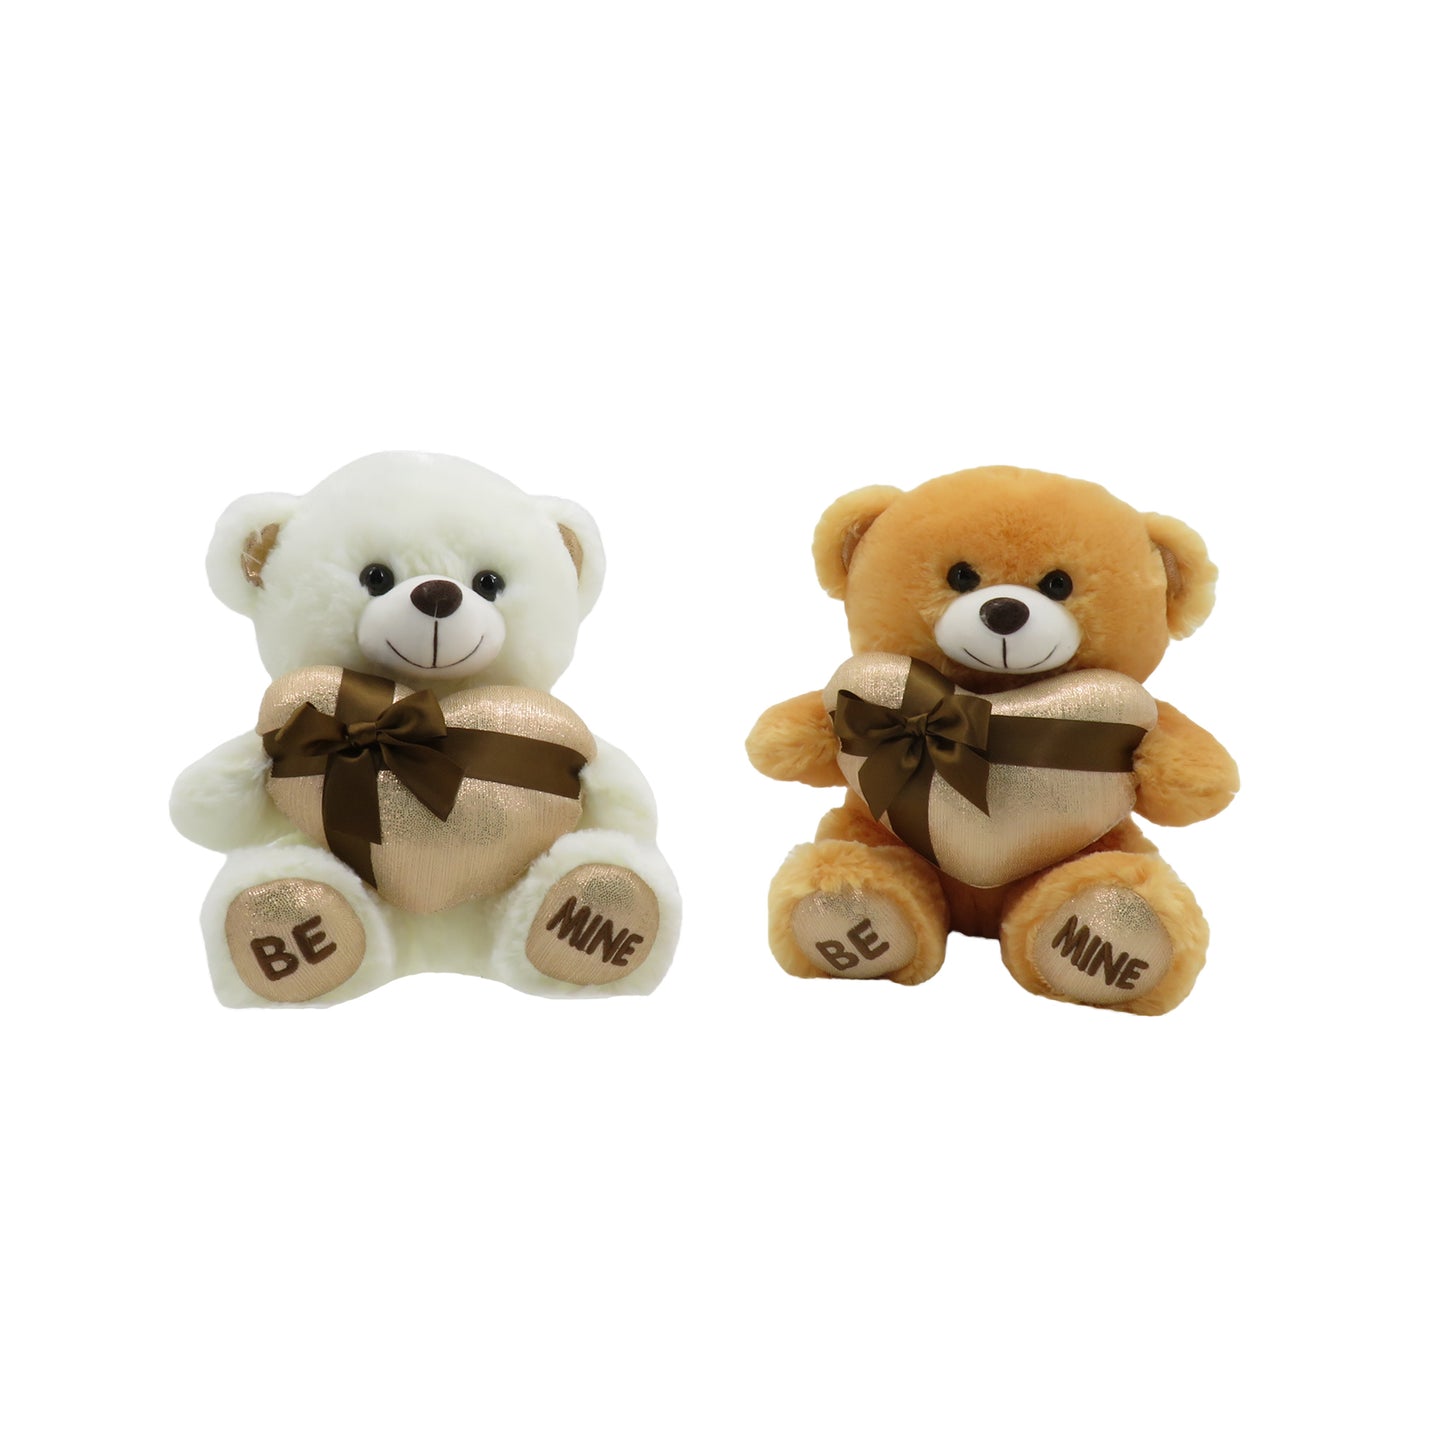 11" Be Mine Gift Teddy Bear